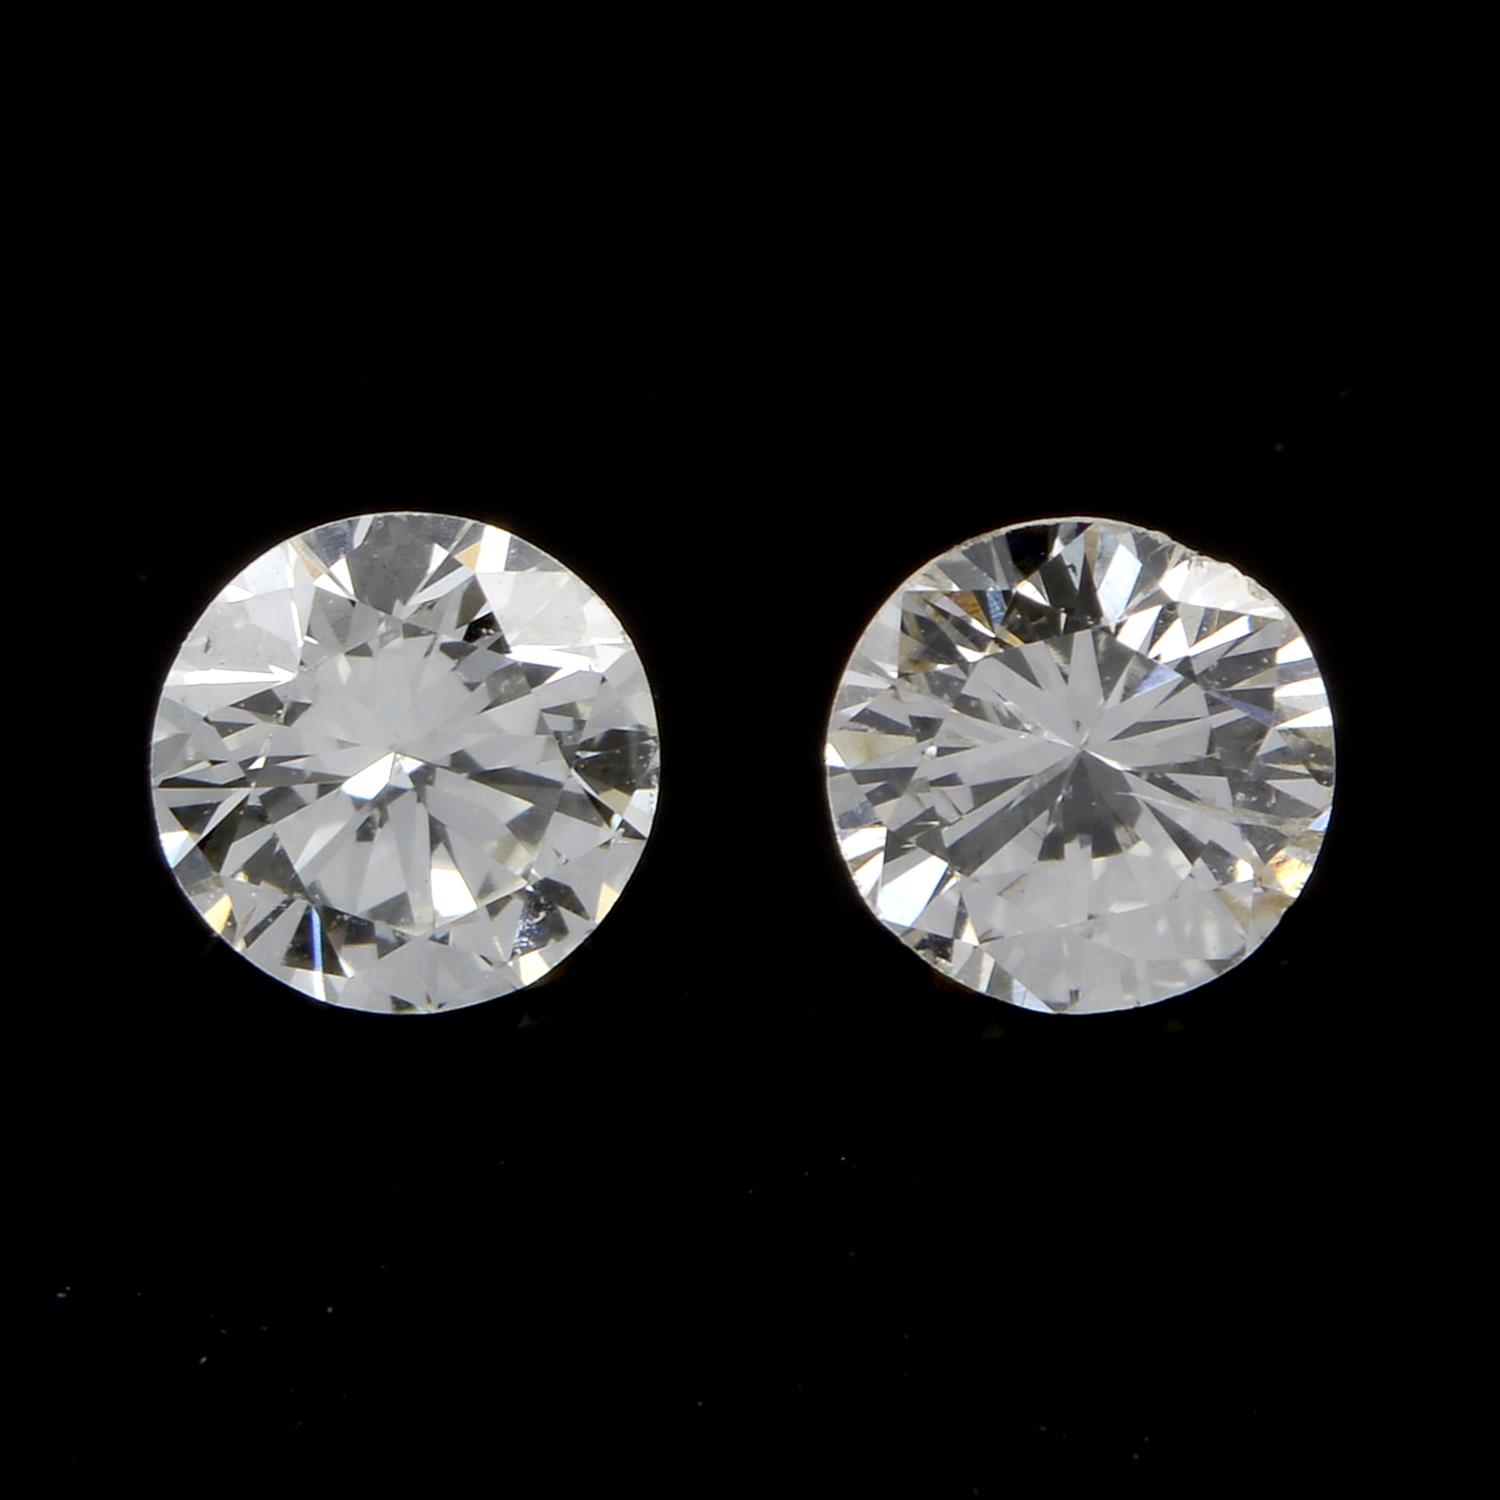 Two brilliant-cut diamonds, 0.35ct